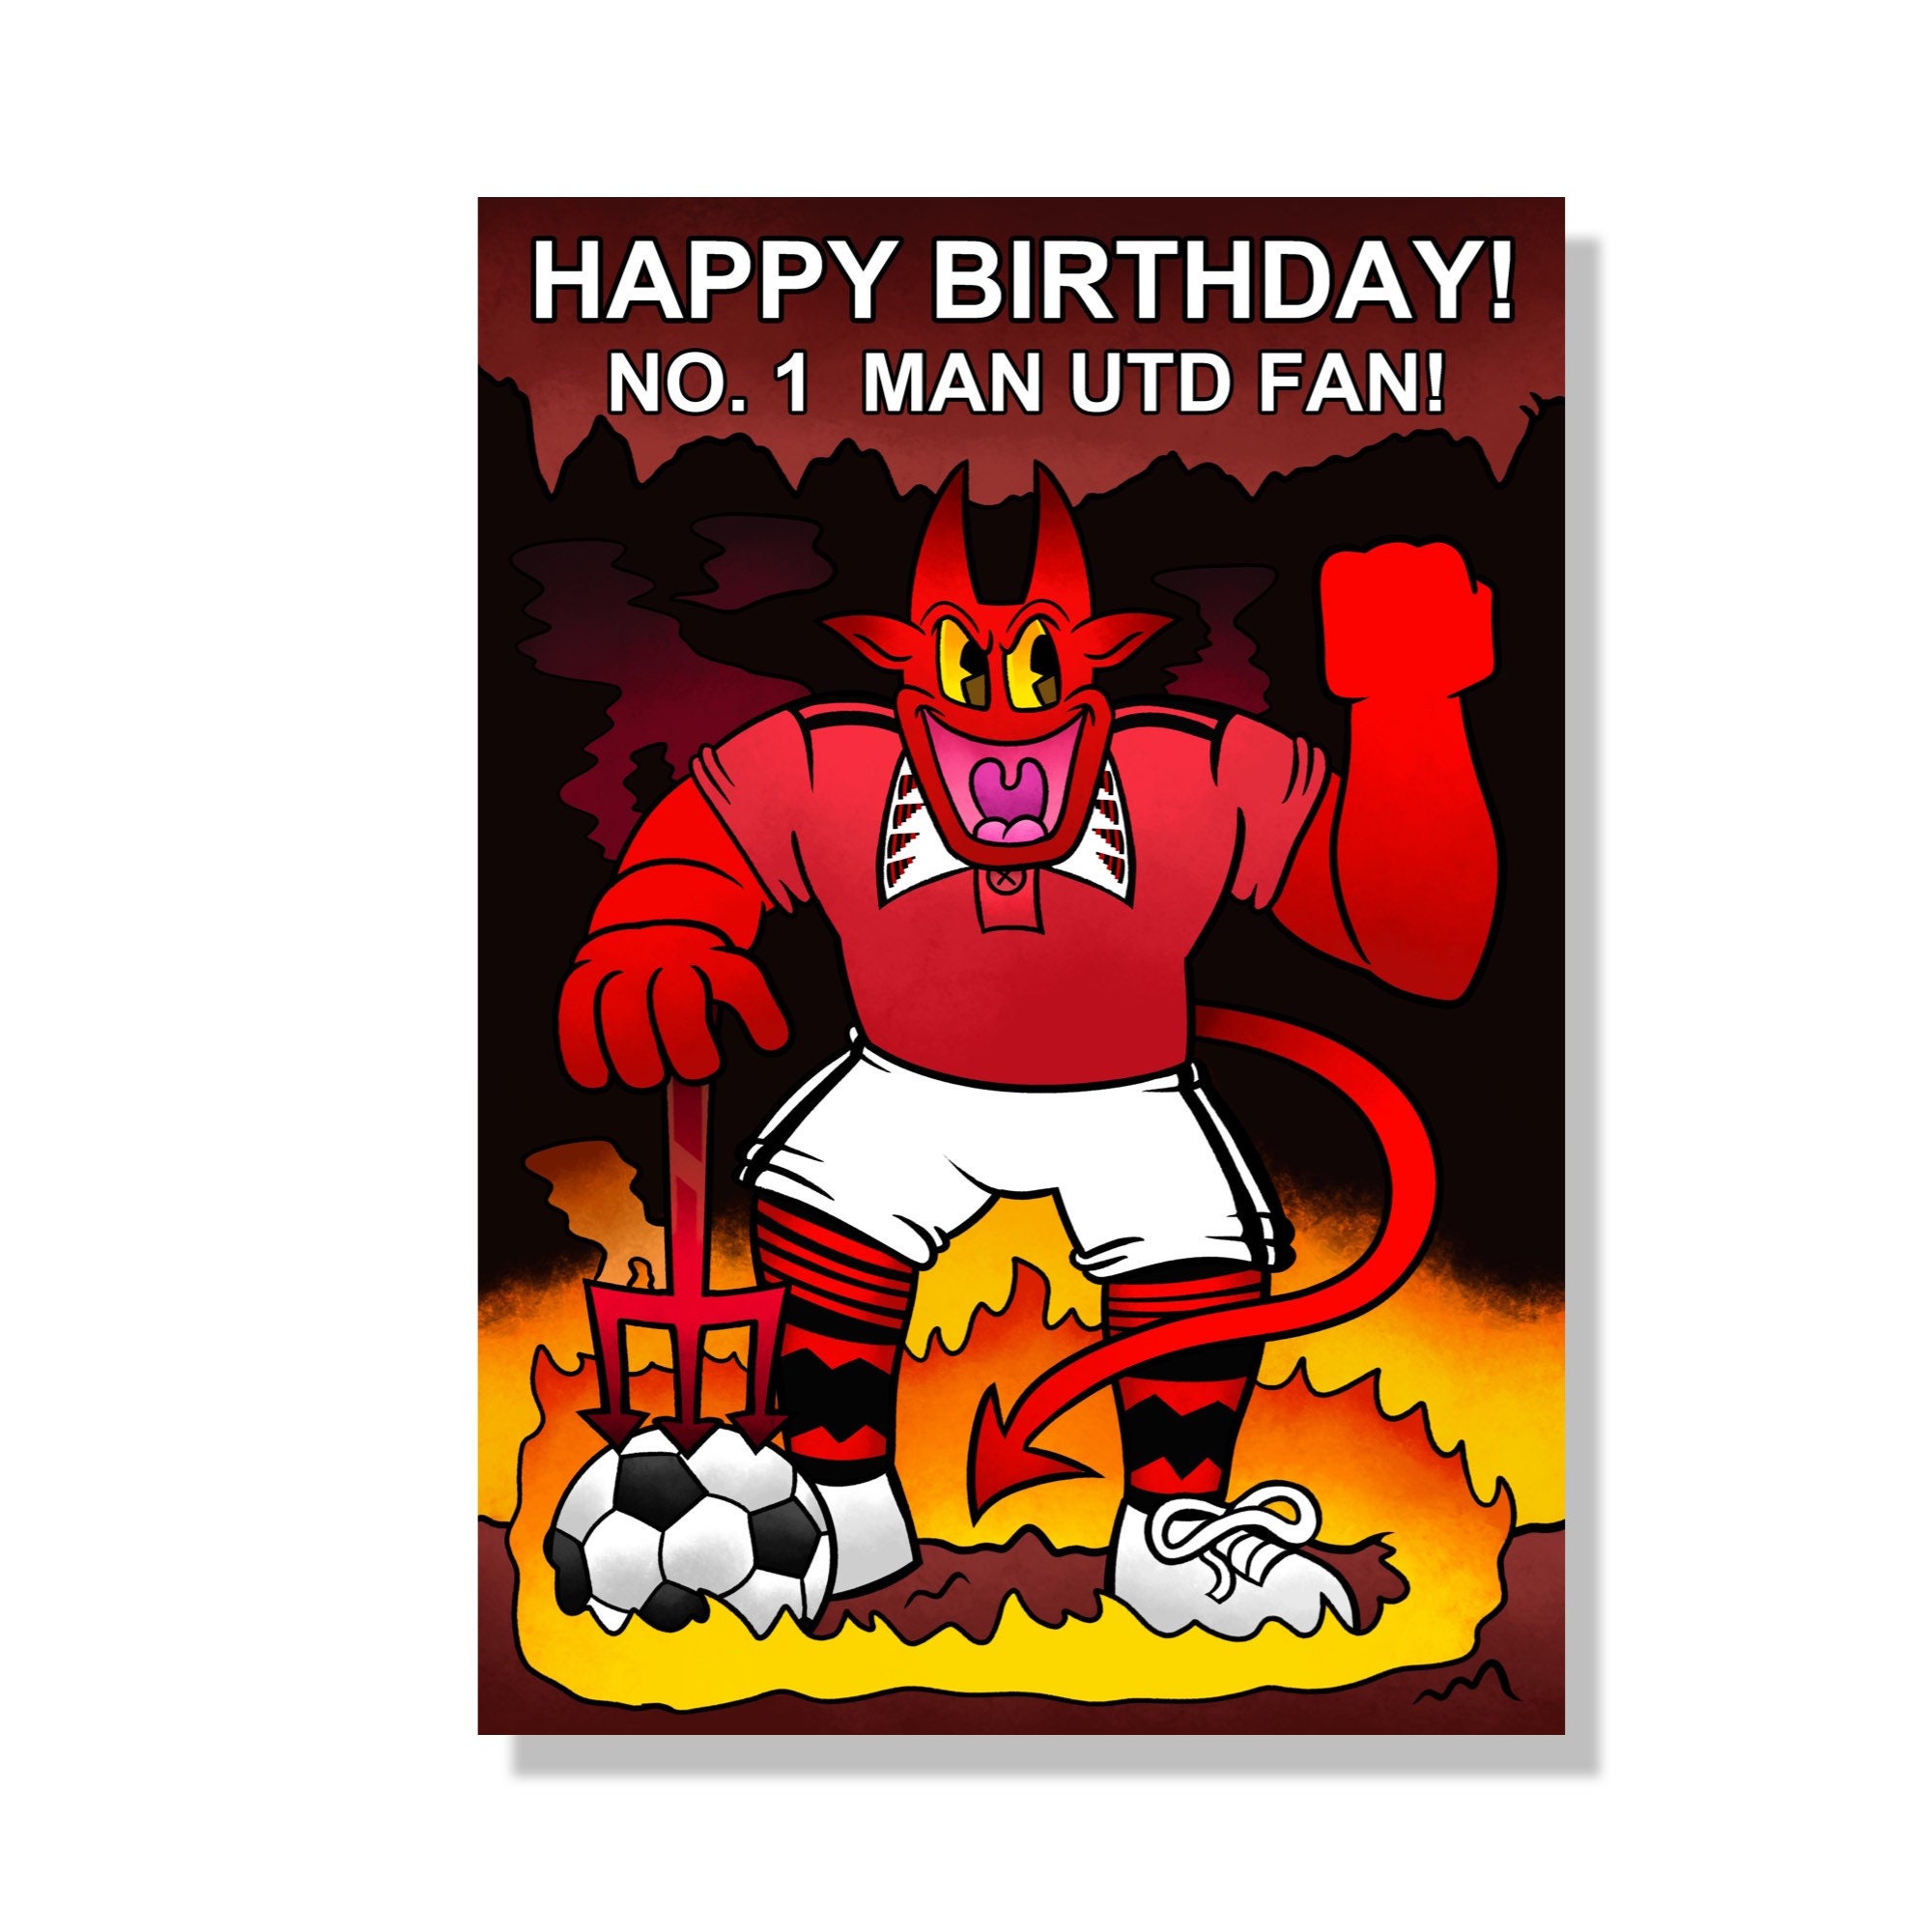 Happy Birthday Man Utd - Etsy